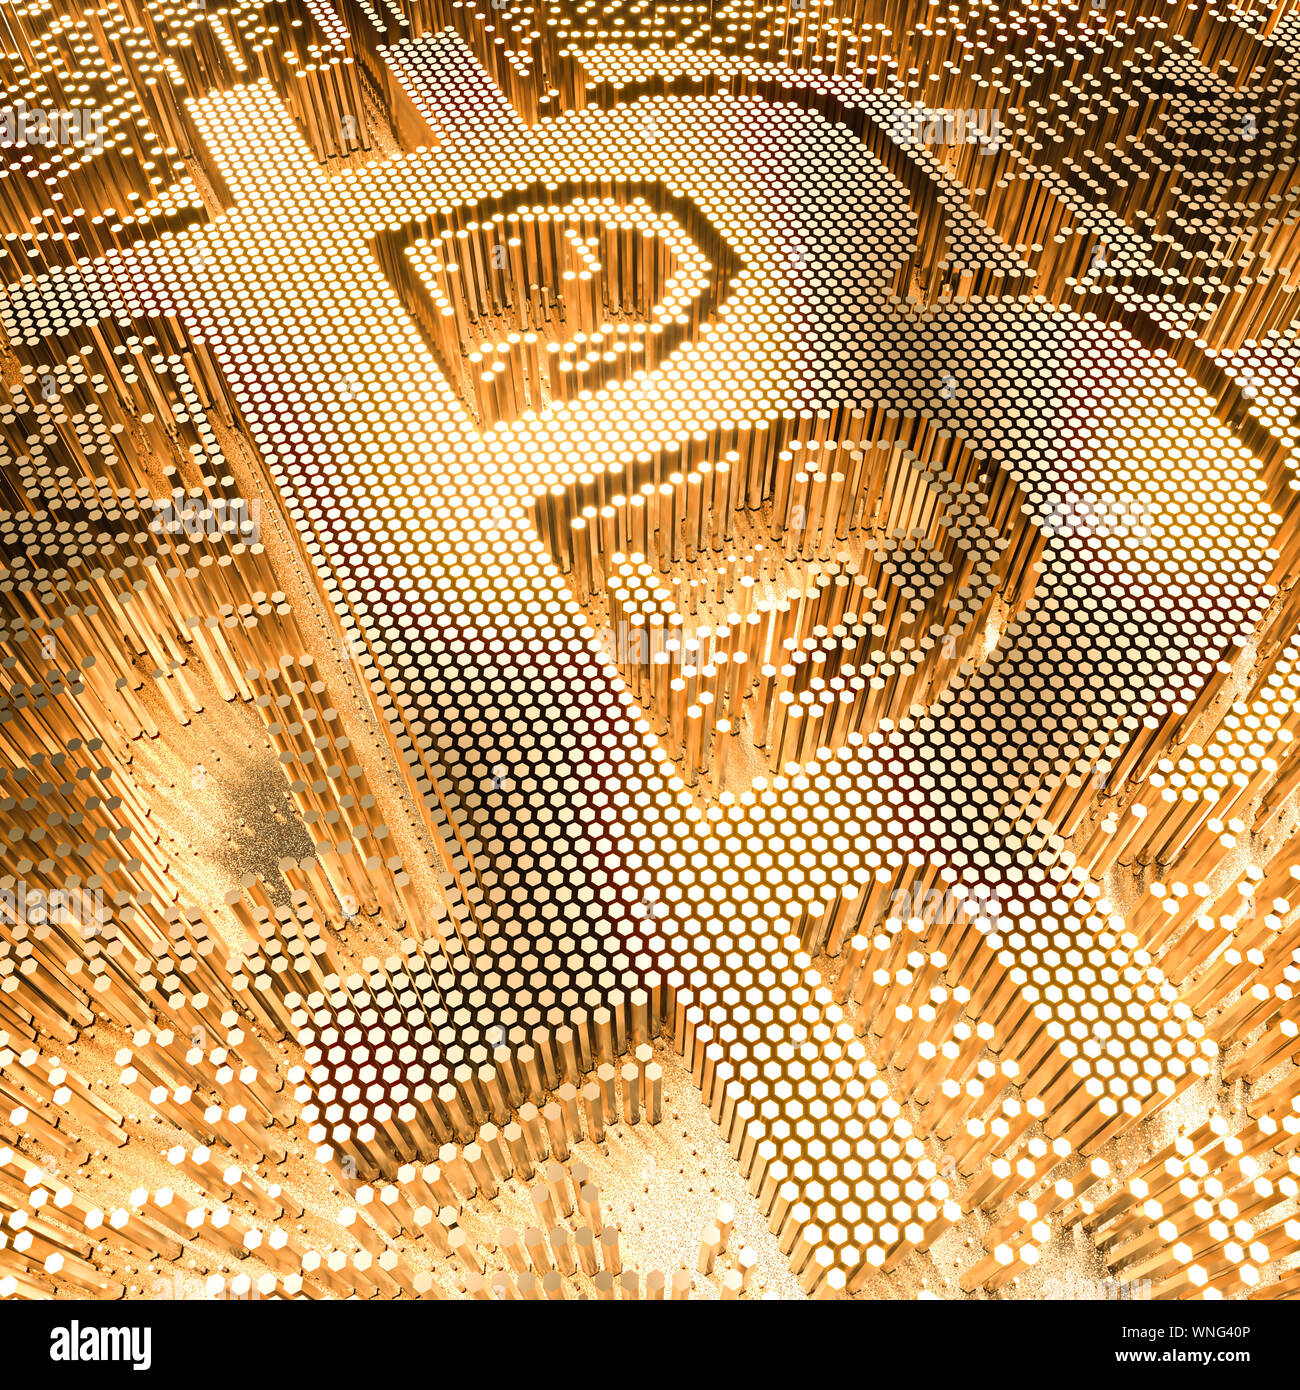 L'image de rendu 3D d'une couleur d'or symbole bitcoin composé d'éléments de géométrie hexagonale.Cripto concept de monnaie Banque D'Images